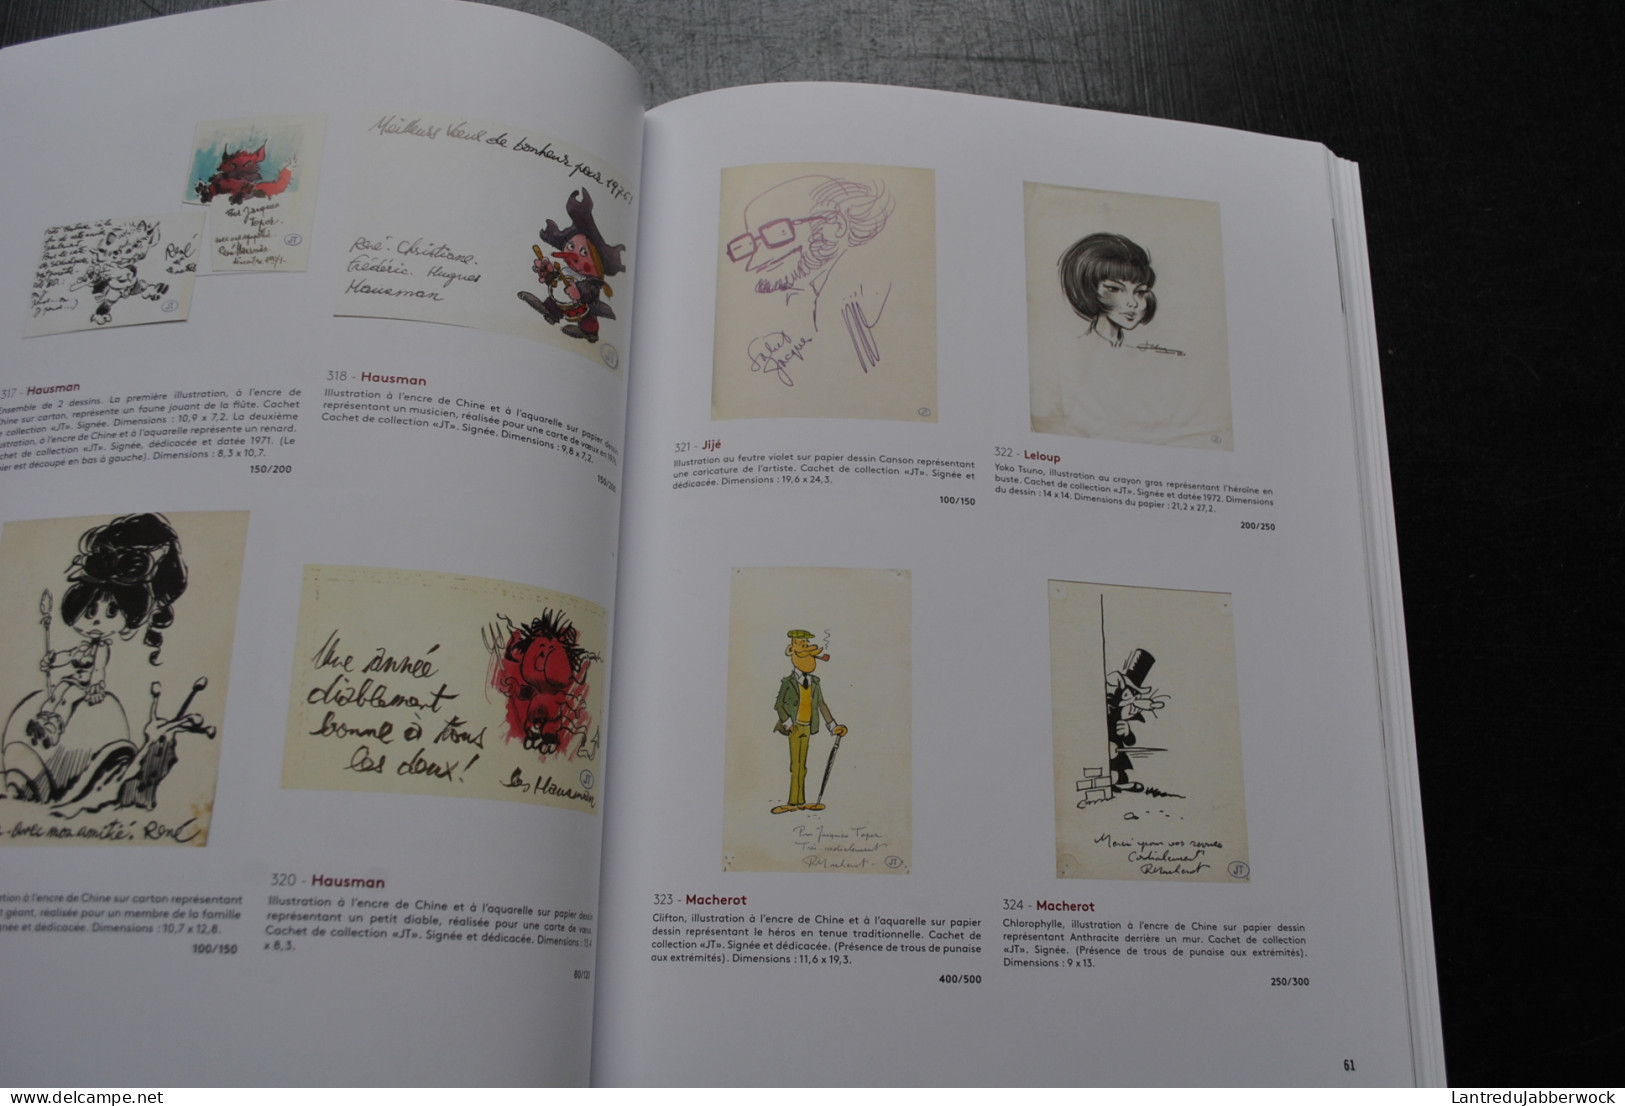 Catalogue de vente aux enchères Banque dessinée by Millon Belgique 2020 BD dédicaces Hergé Tintin Franquin Topor Dessins